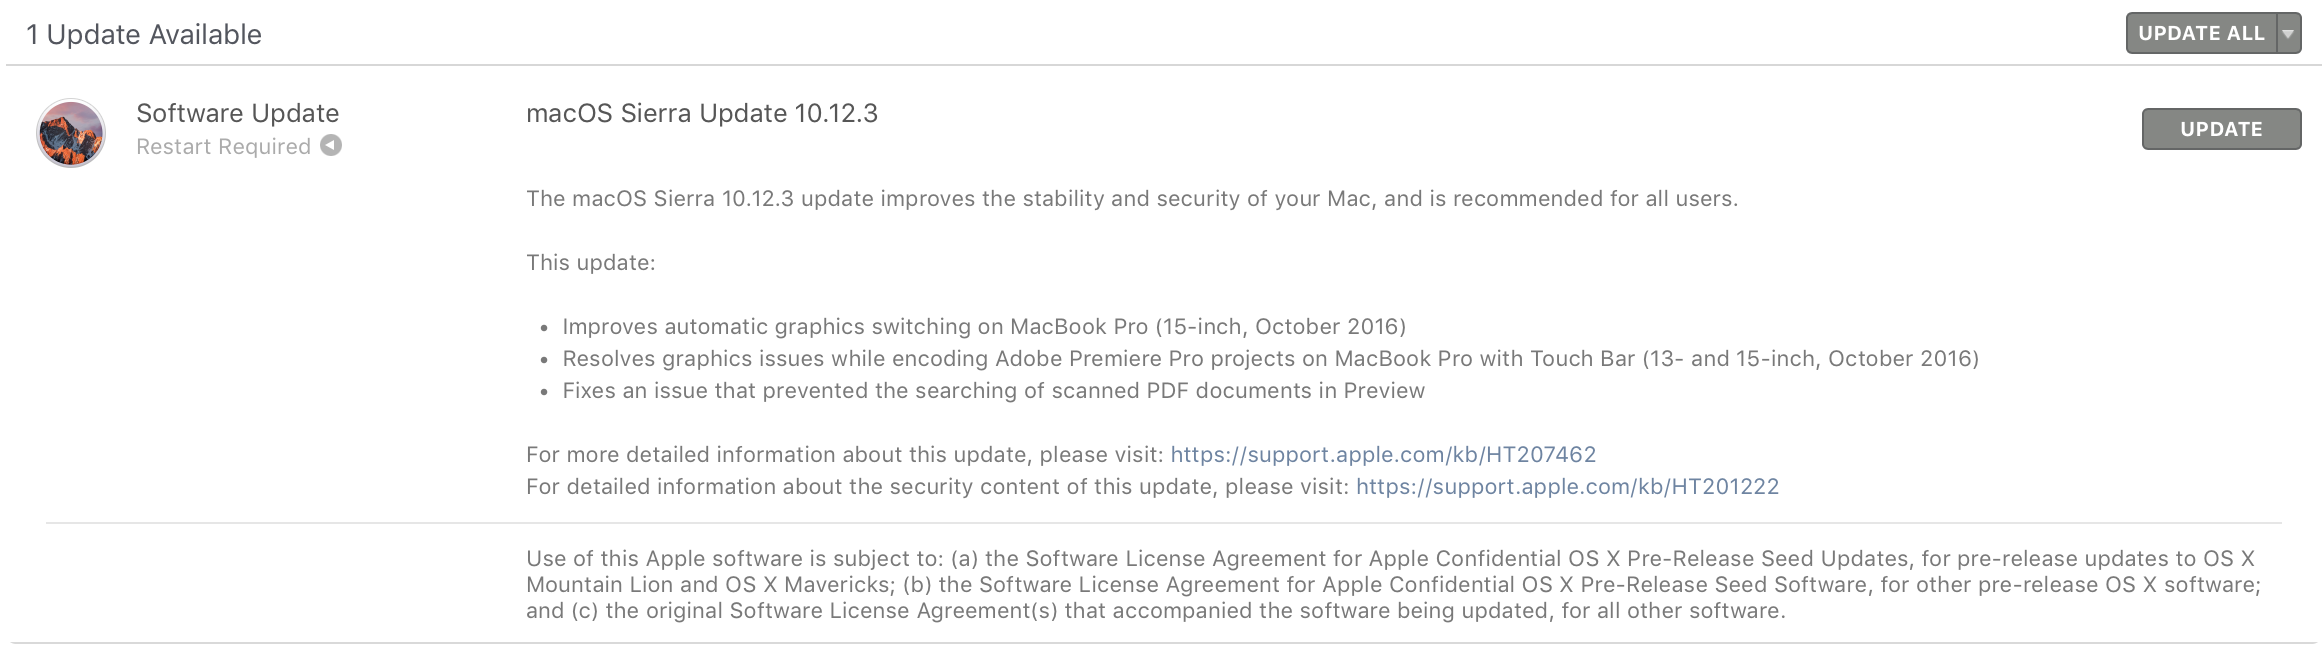 macOS Sierra 10.12.3 Update